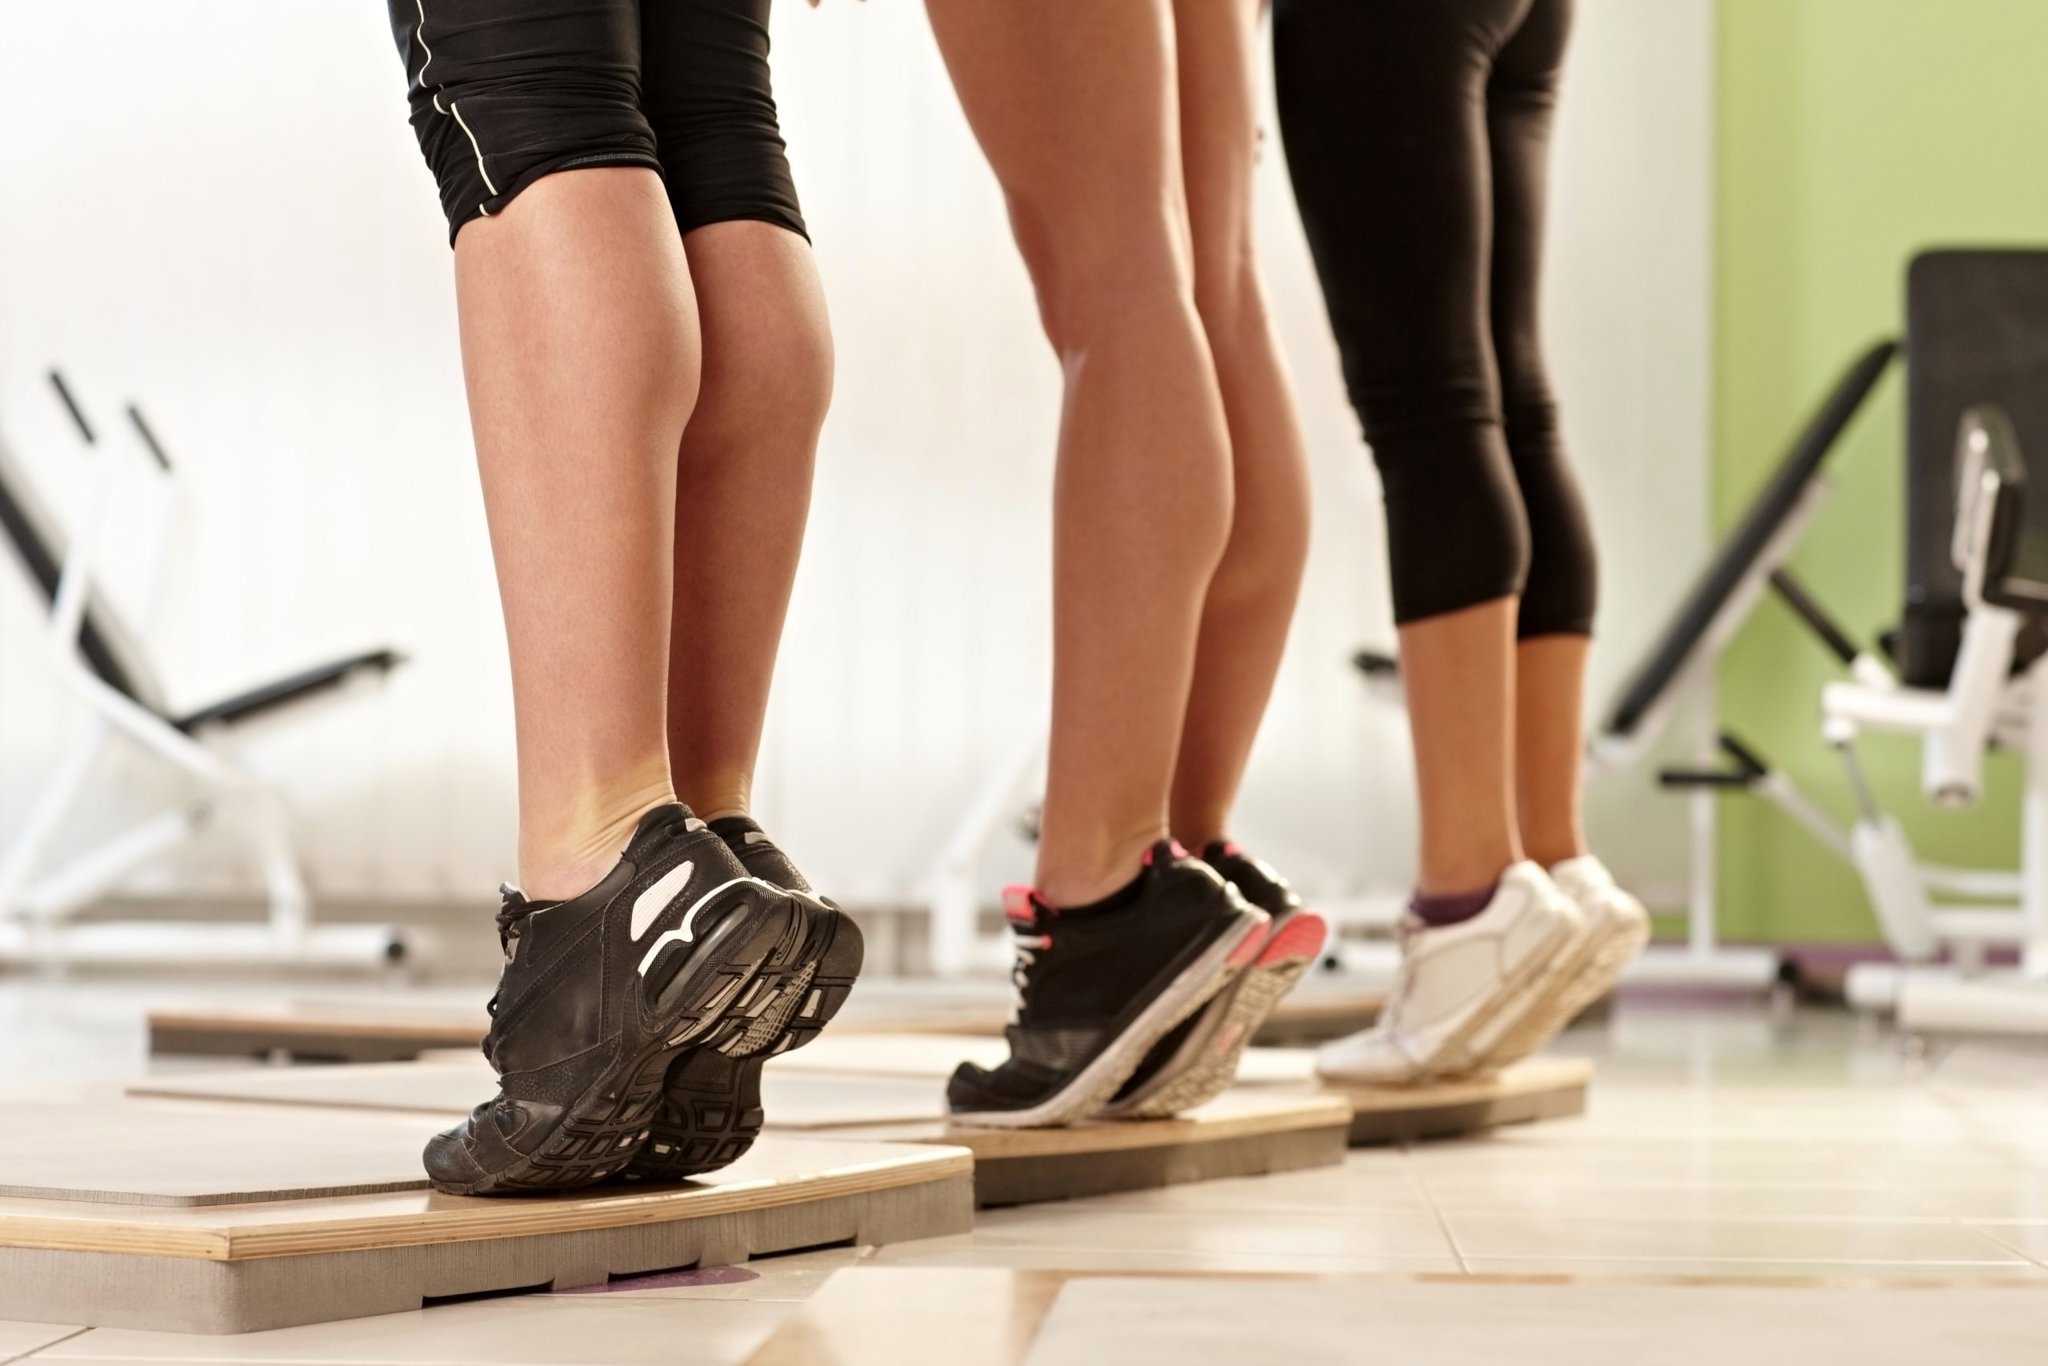 Nguyên nhân bị căng cơ bắp chân cũng là do người bệnh thường xuyên vận động, tập luyện quá sức